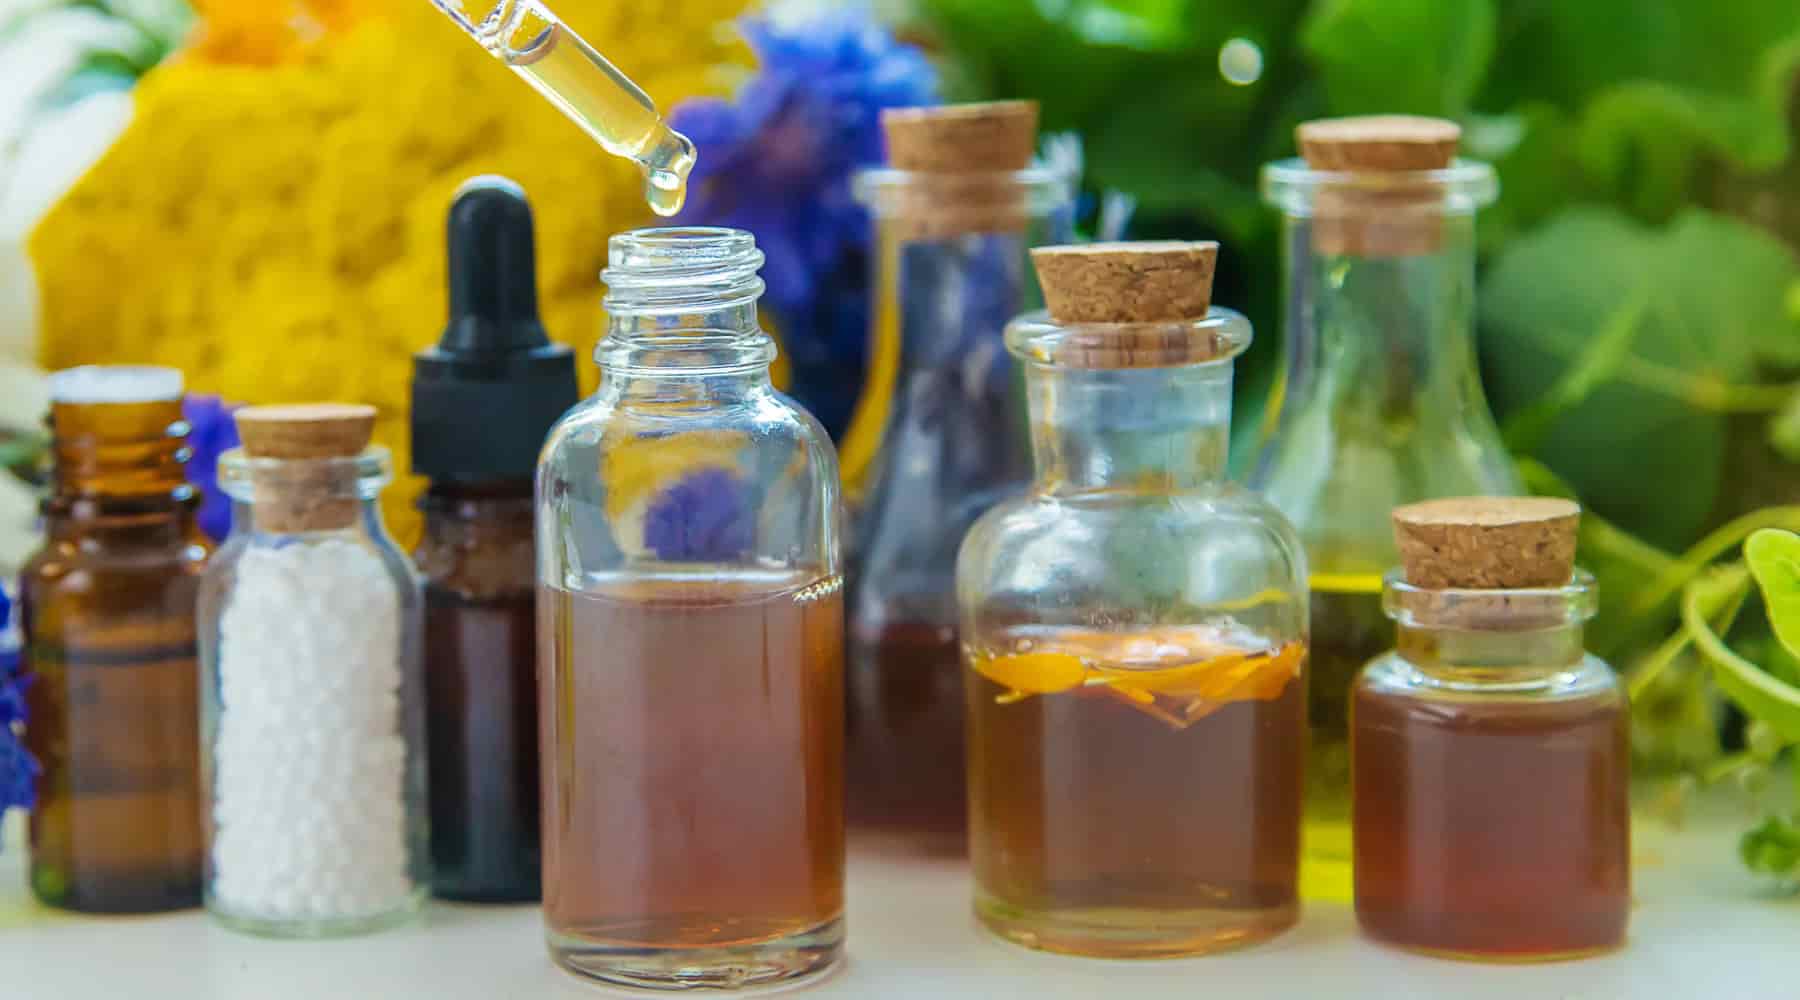 Homeopatía, aceites esenciales y tinturas de hierbas: ¿cuál es la diferencia?